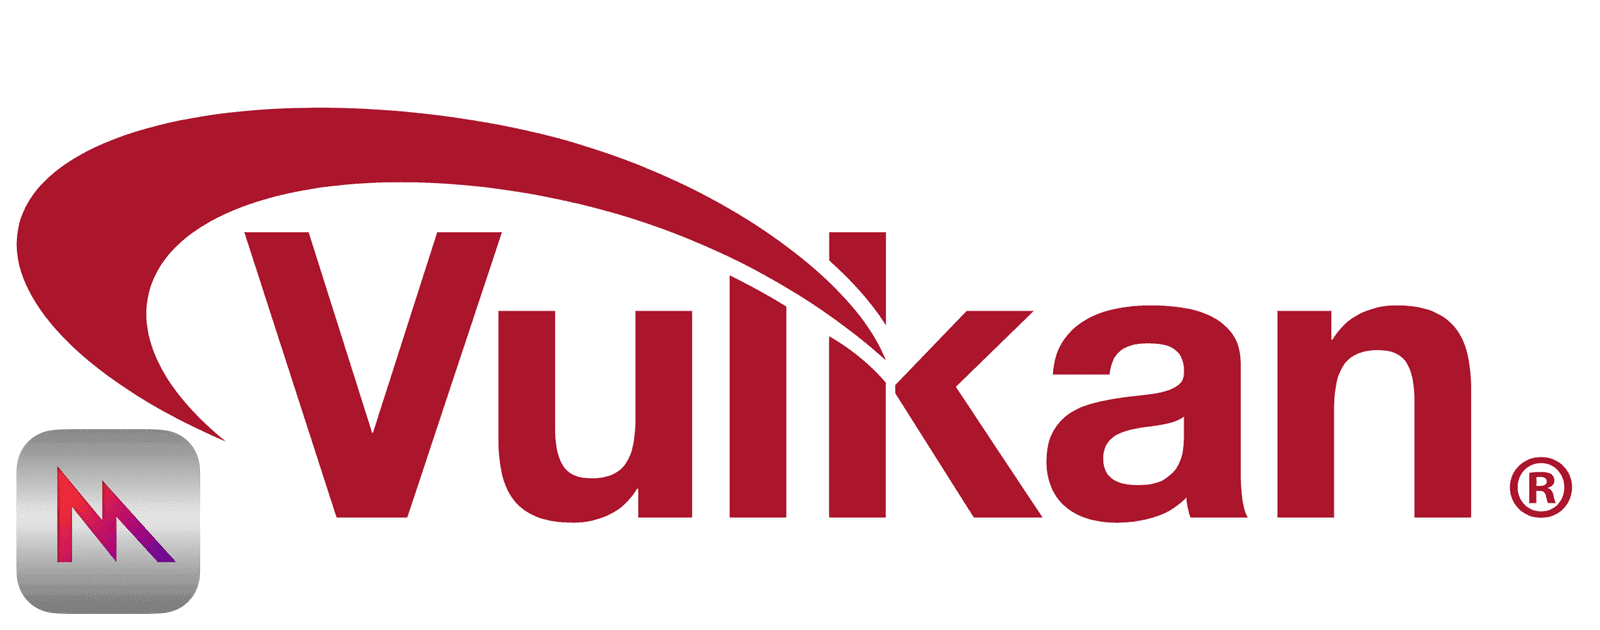 Logo of Vulkan, a GPU API coming to macOS and iOS.